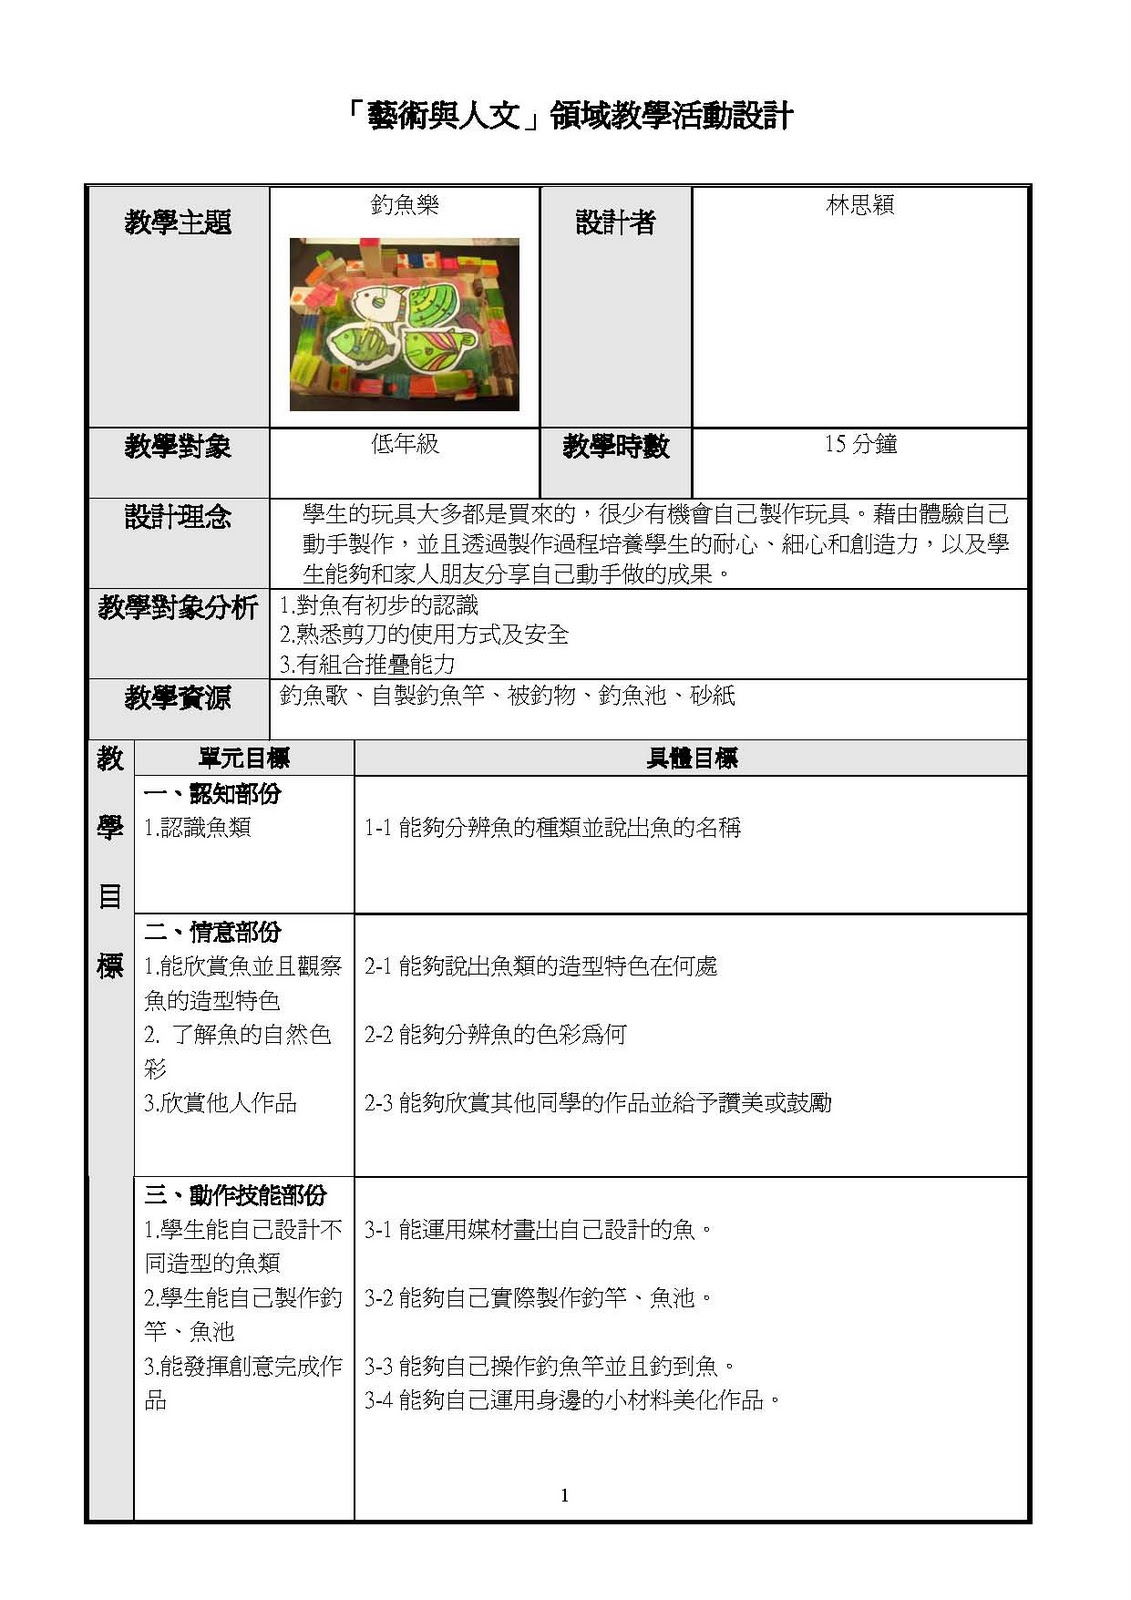 【初中语文】七年级语文下册文言文翻译大全和课本注释 - 知乎